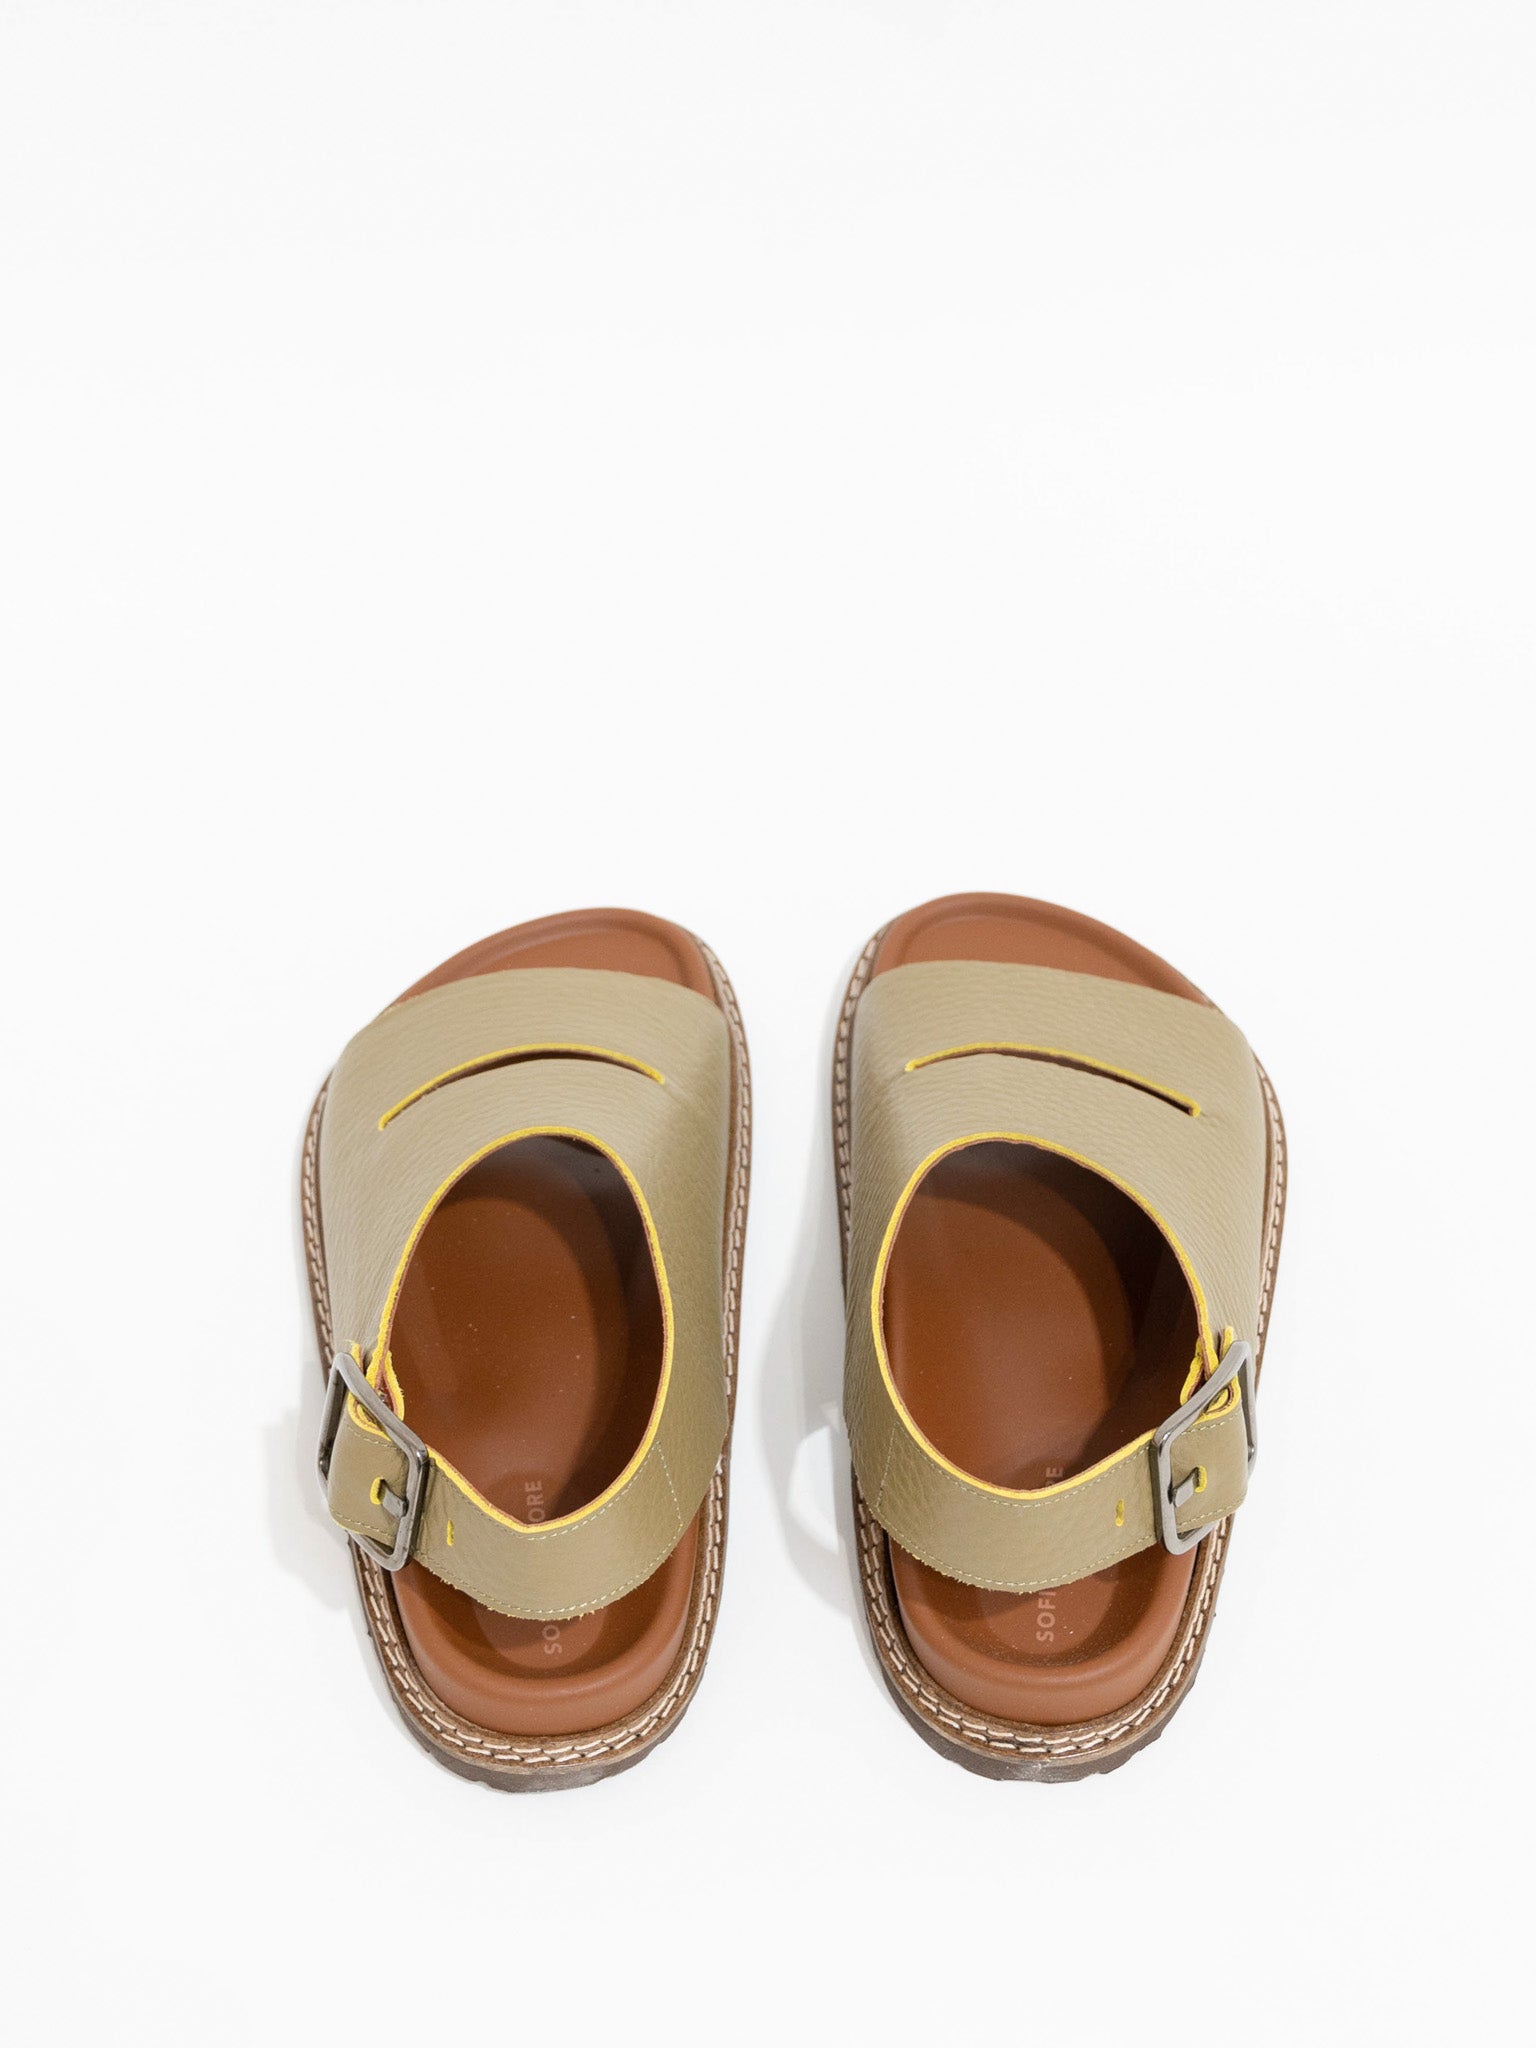 Namu Shop - Sofie D'Hoore Future Ankle Strap Sandals - Lentil